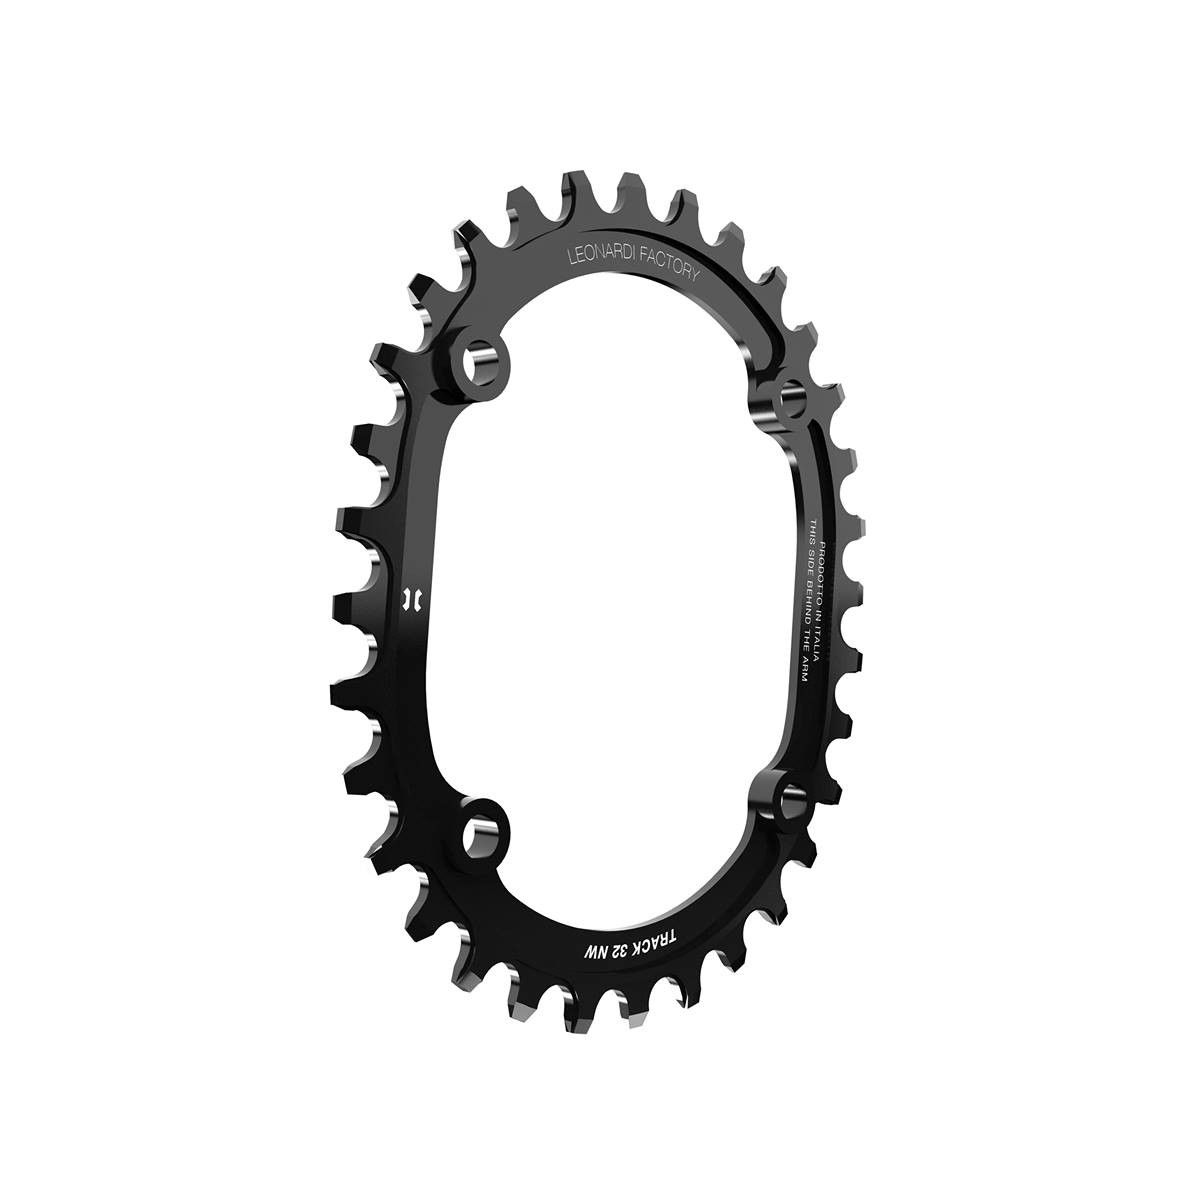 Plato de Bicicleta Color Negro Leonardi Factory Oval Track BCD 104